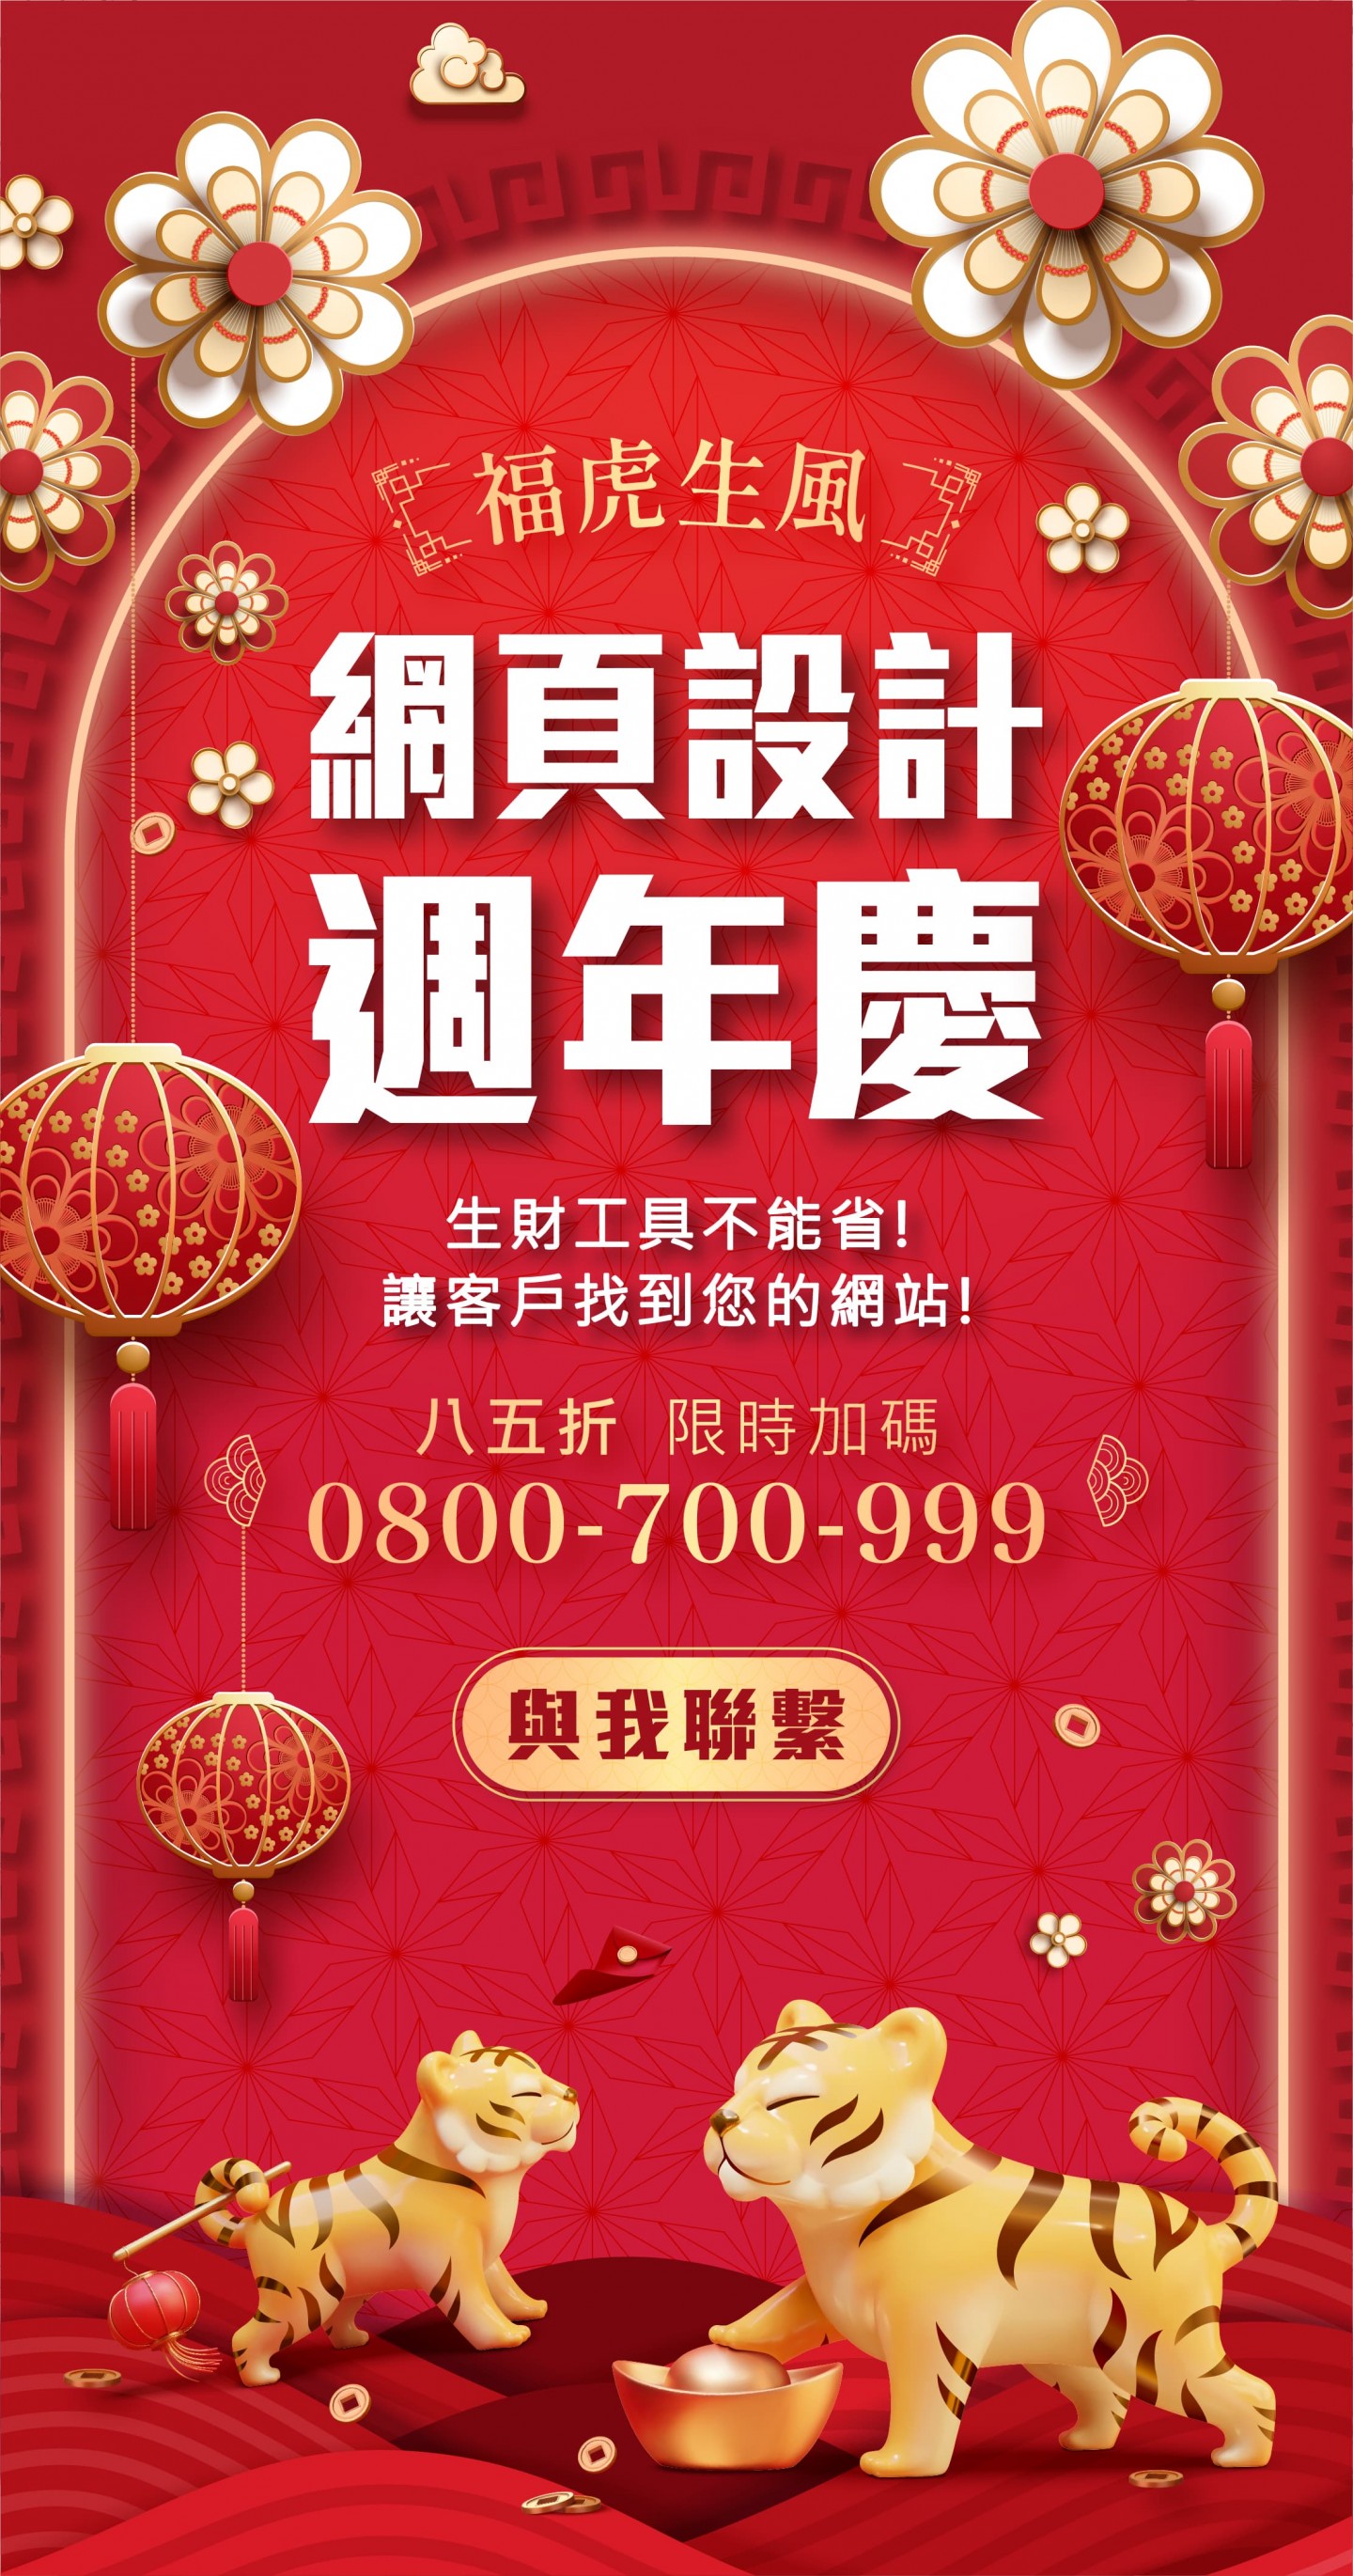 台南網頁設計周年慶